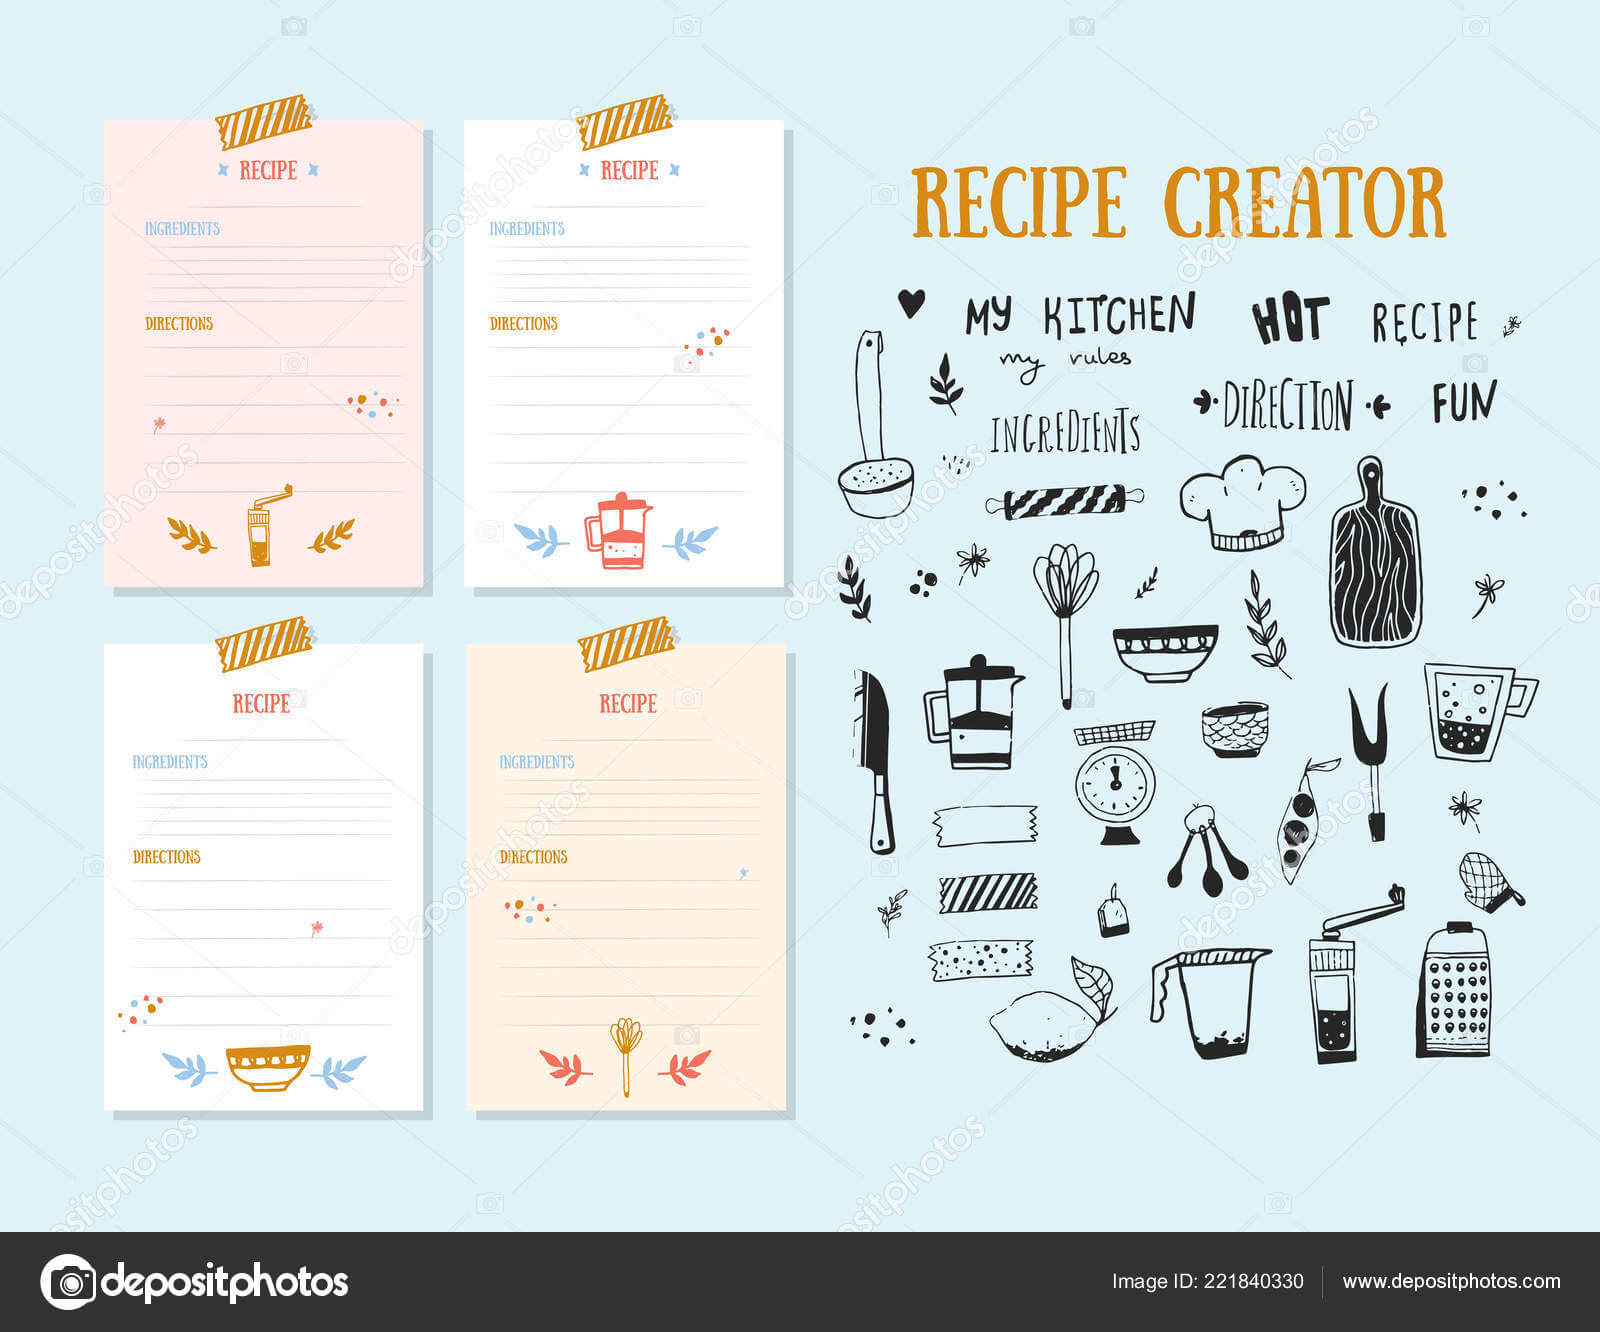 Cookbook Design Template | Modern Recipe Card Template Set Inside Recipe Card Design Template